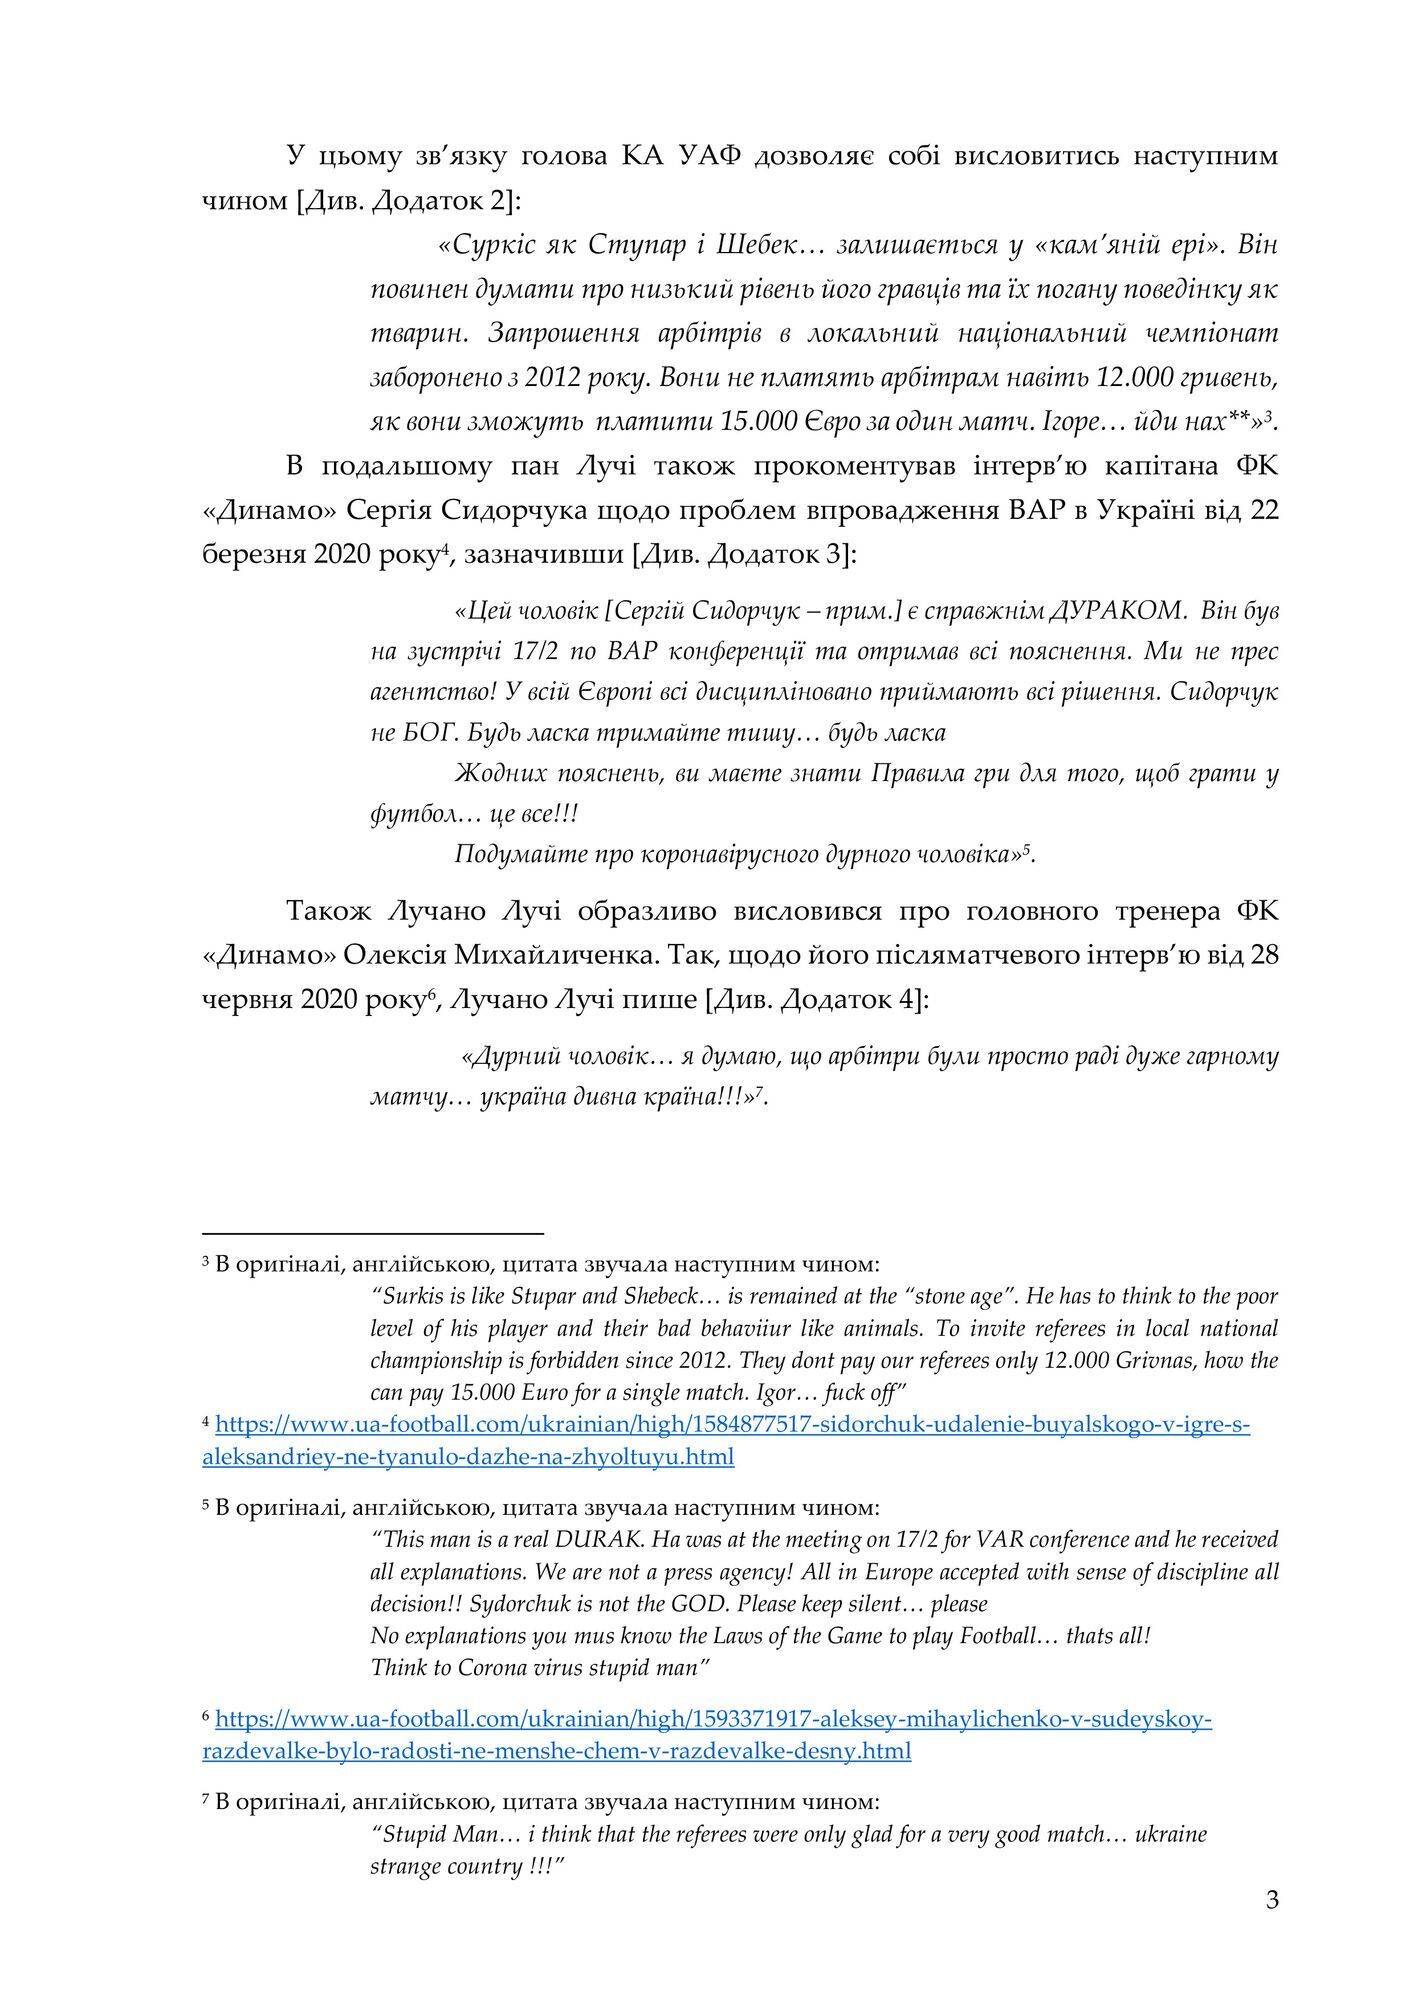 Официальное заявление "Динамо", страница 3